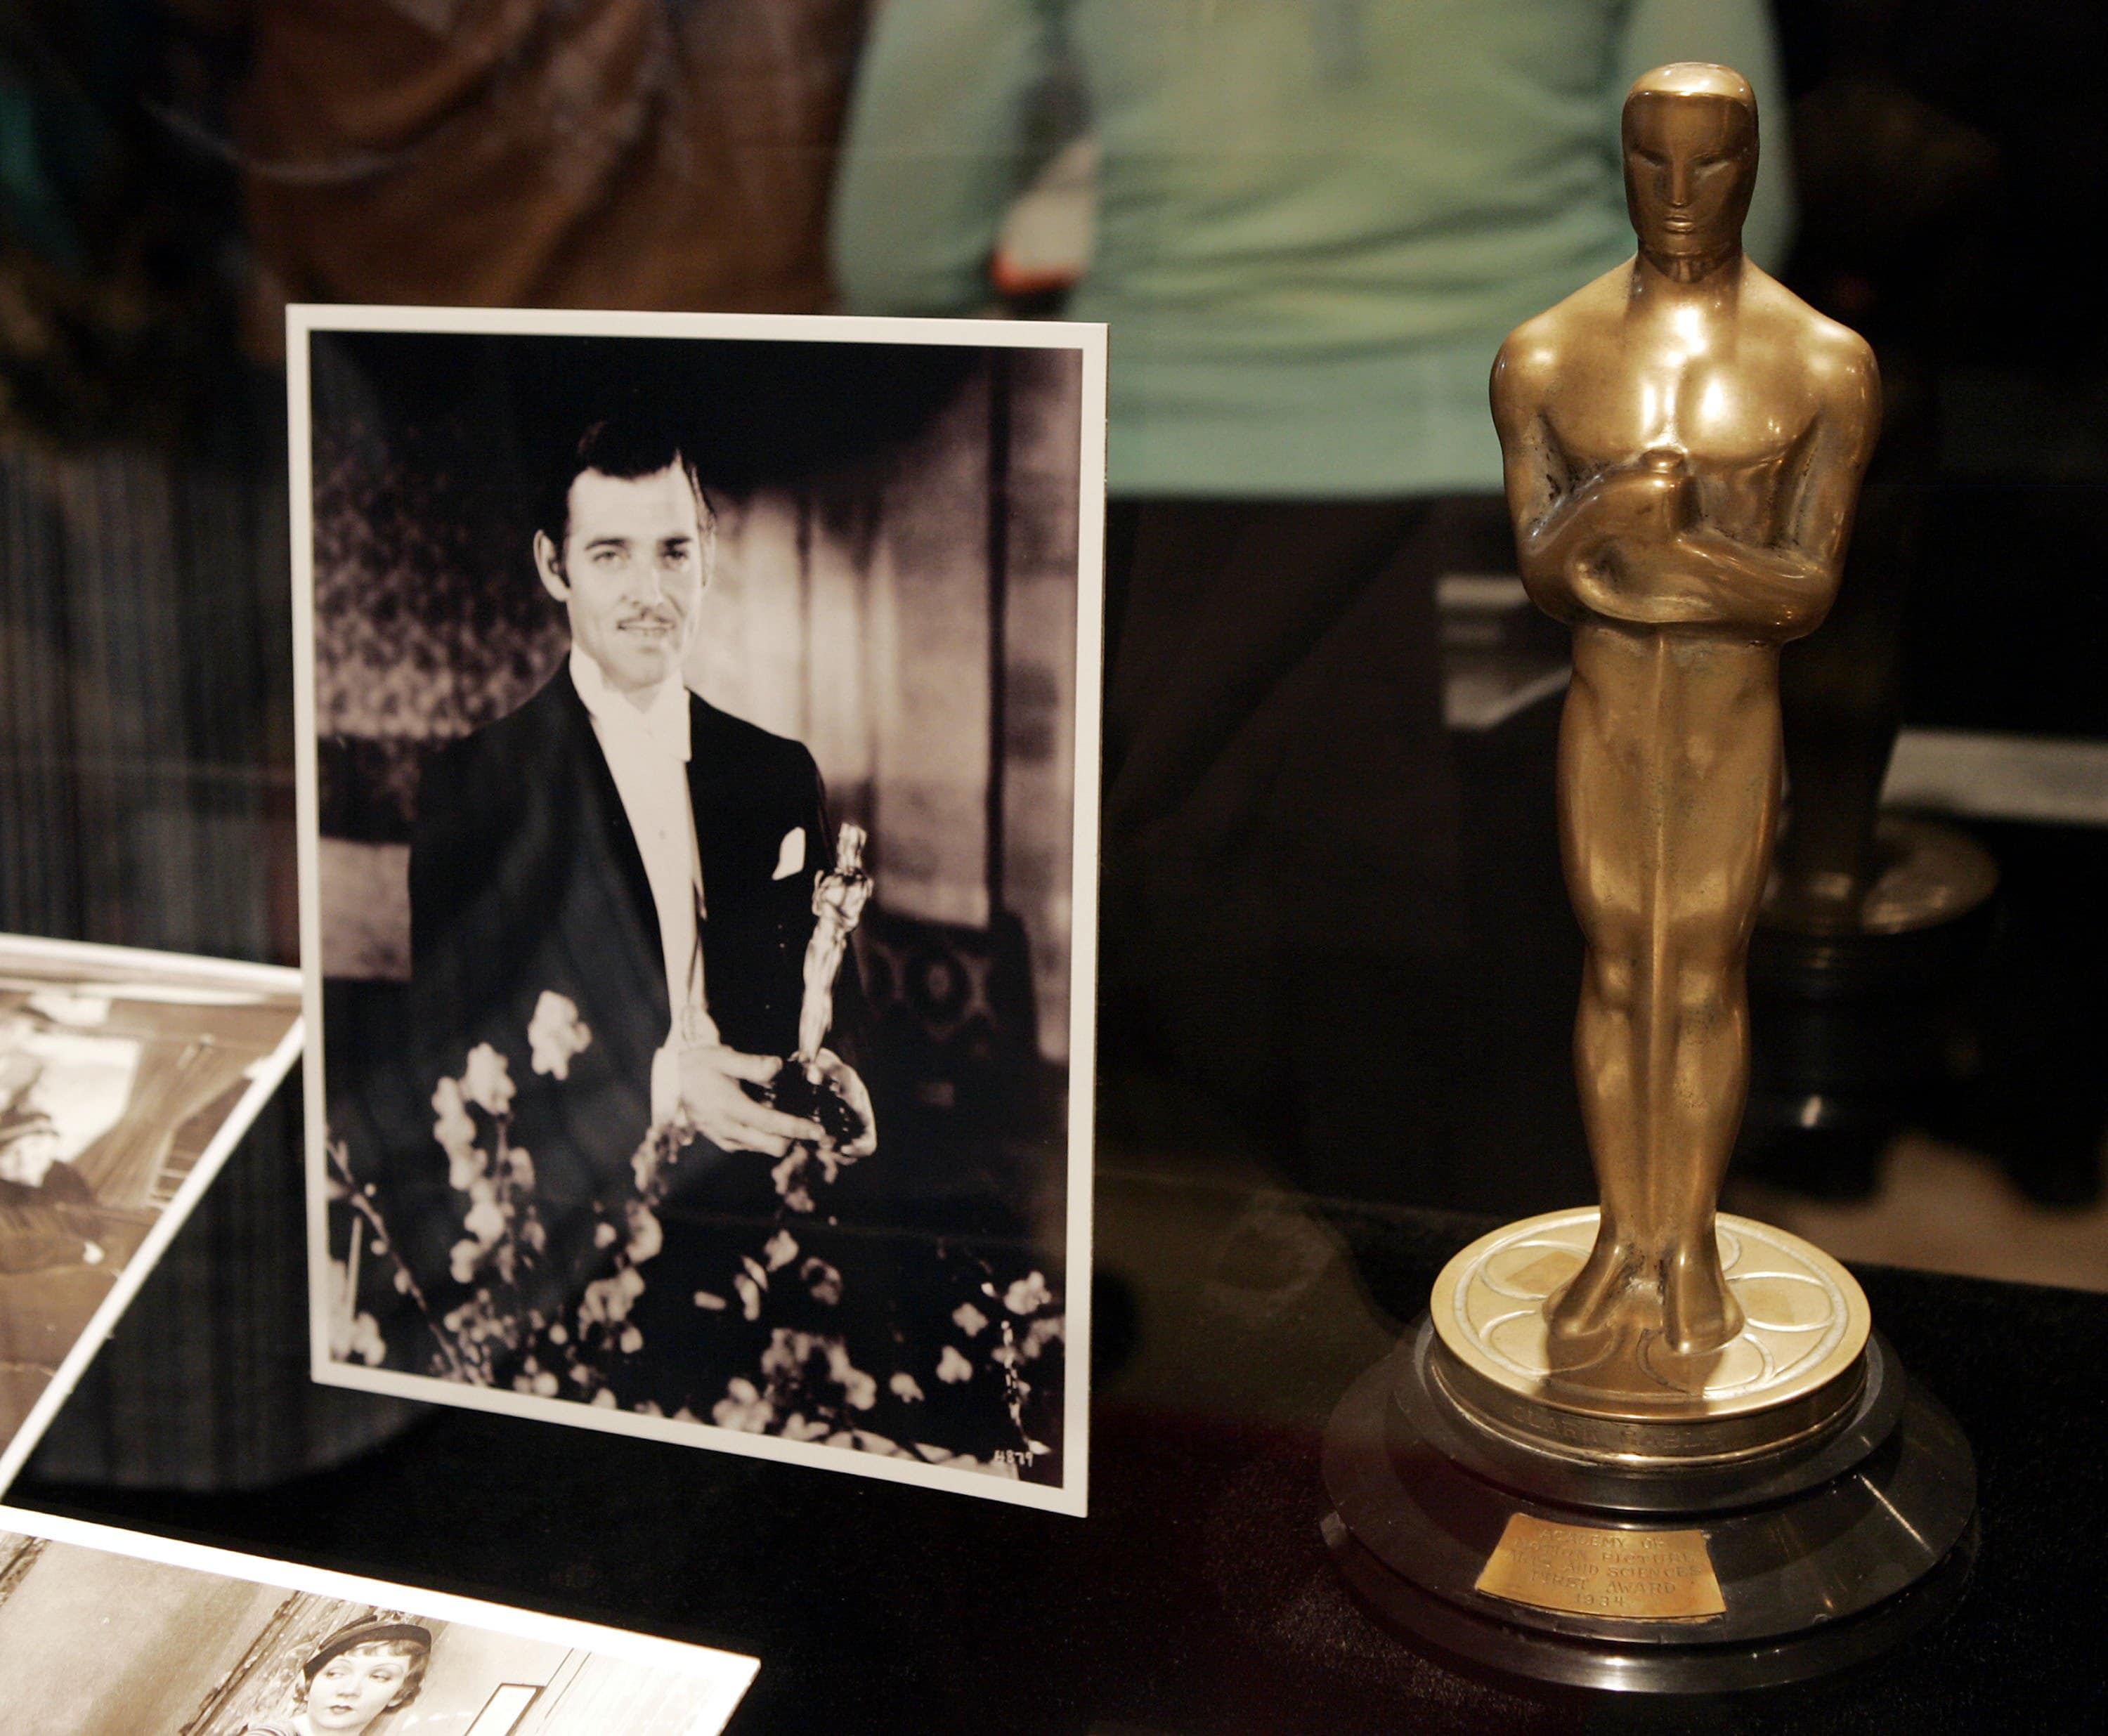 L'Oscar come Migliore attore protagonista per "Accadde una notte" (1934), qui esposto nel 2006 in una mostra a Hollywood